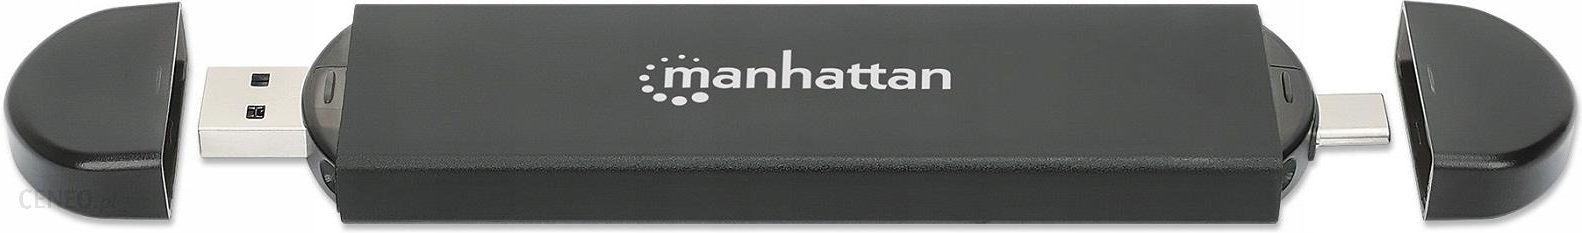 Manhattan M.2 NVMe and SATA SSD USB Enclosure (130639)